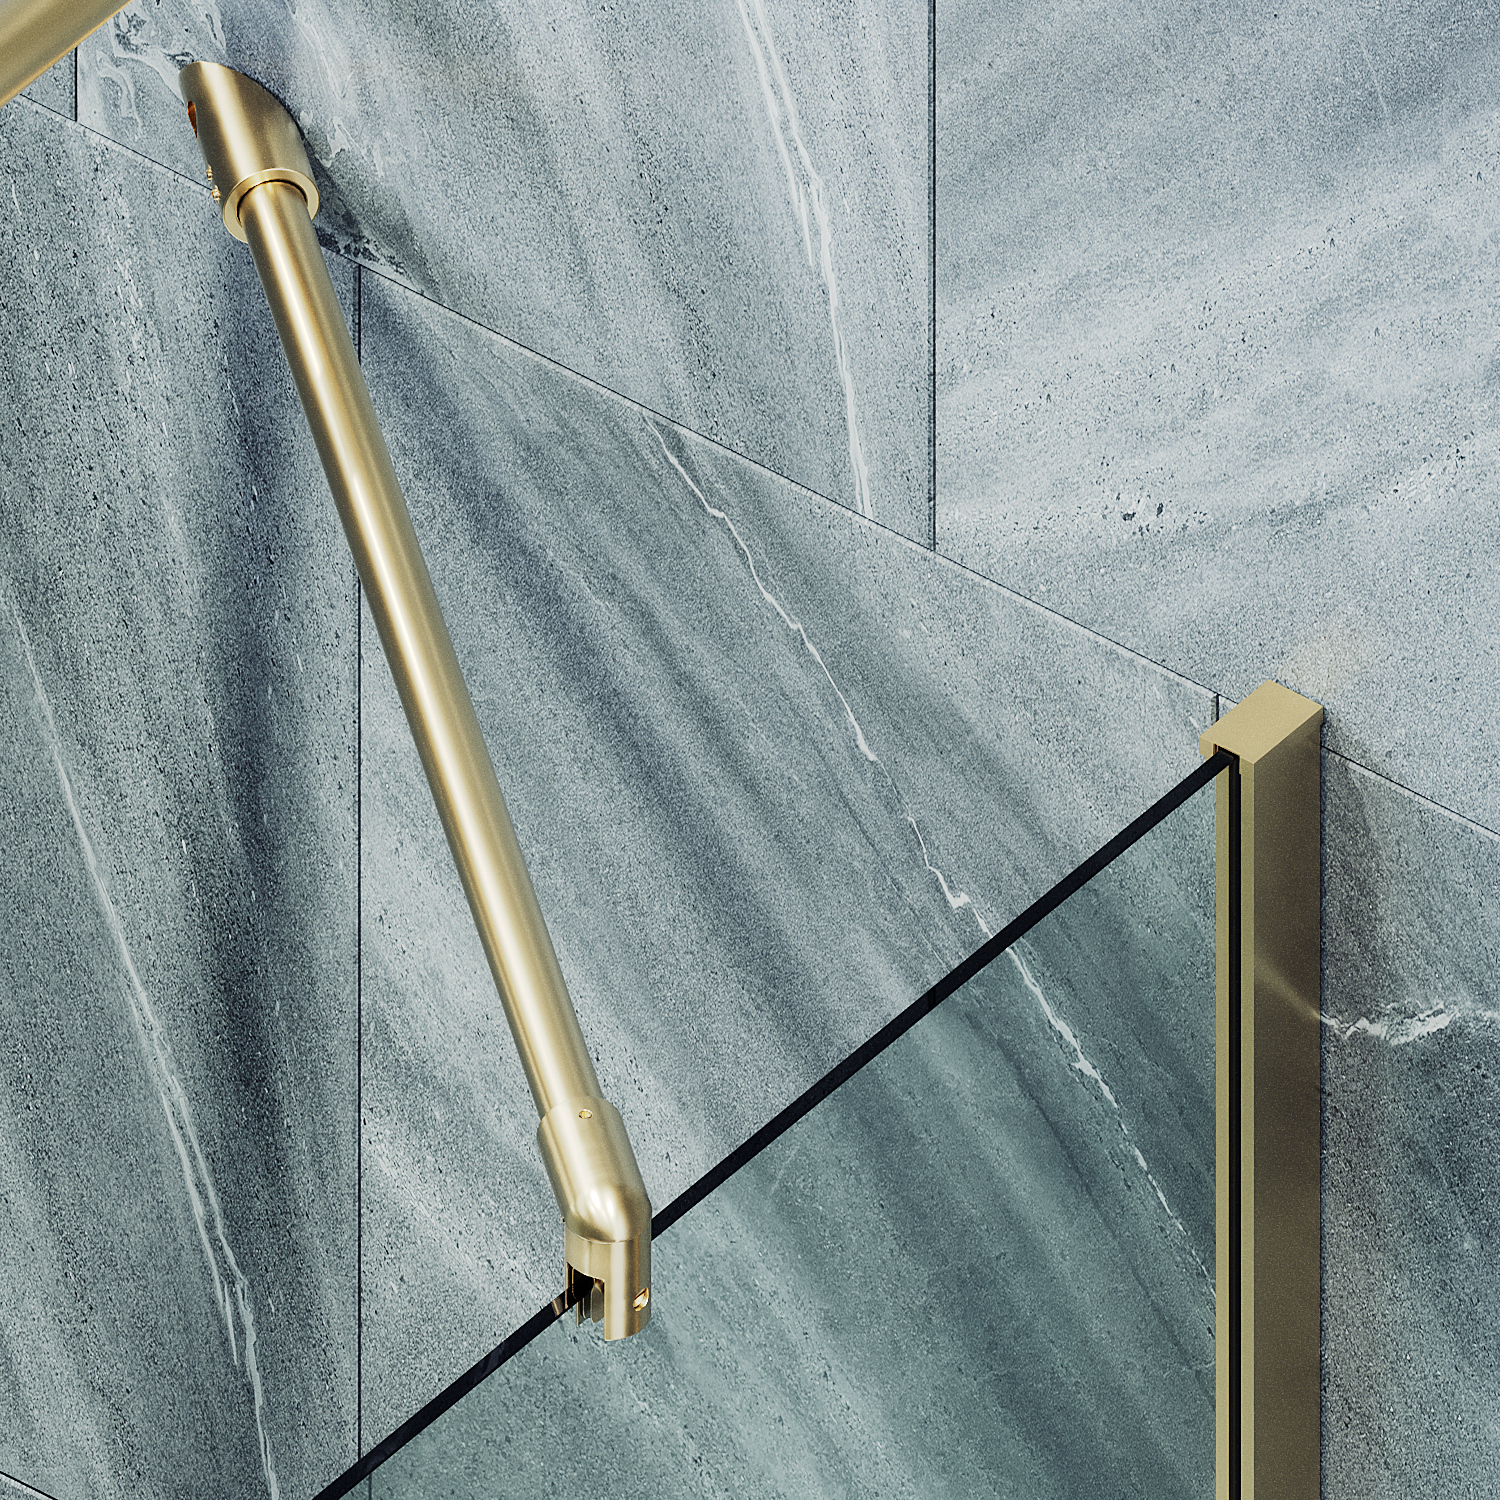 Шторка для ванны MaybahGlass 30х140 MGV-248-3ш стекло прозрачное, профиль золото - фото 2